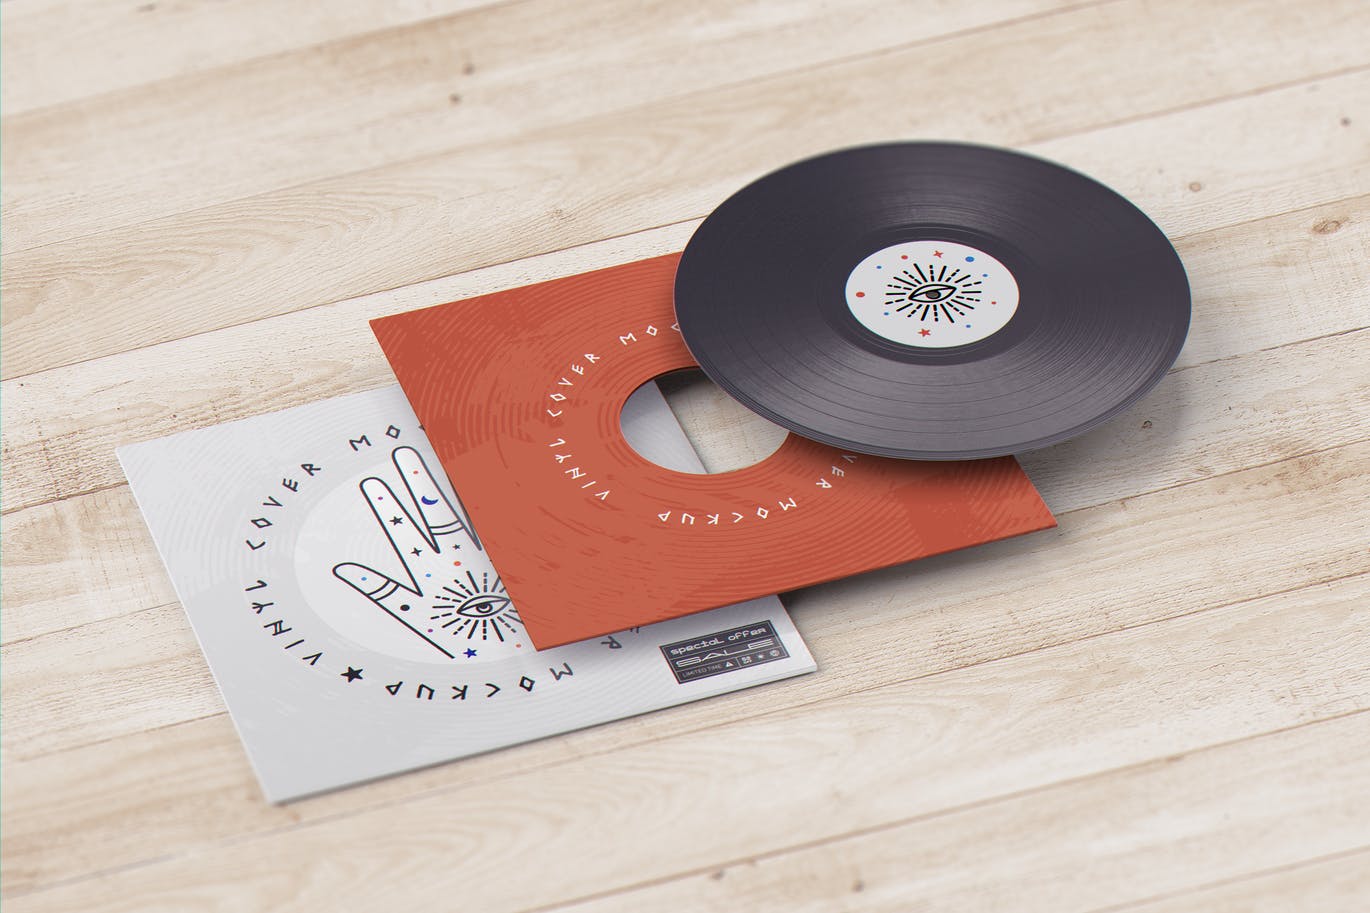 乙烯基黑胶唱片品牌设计样机 (PSD)